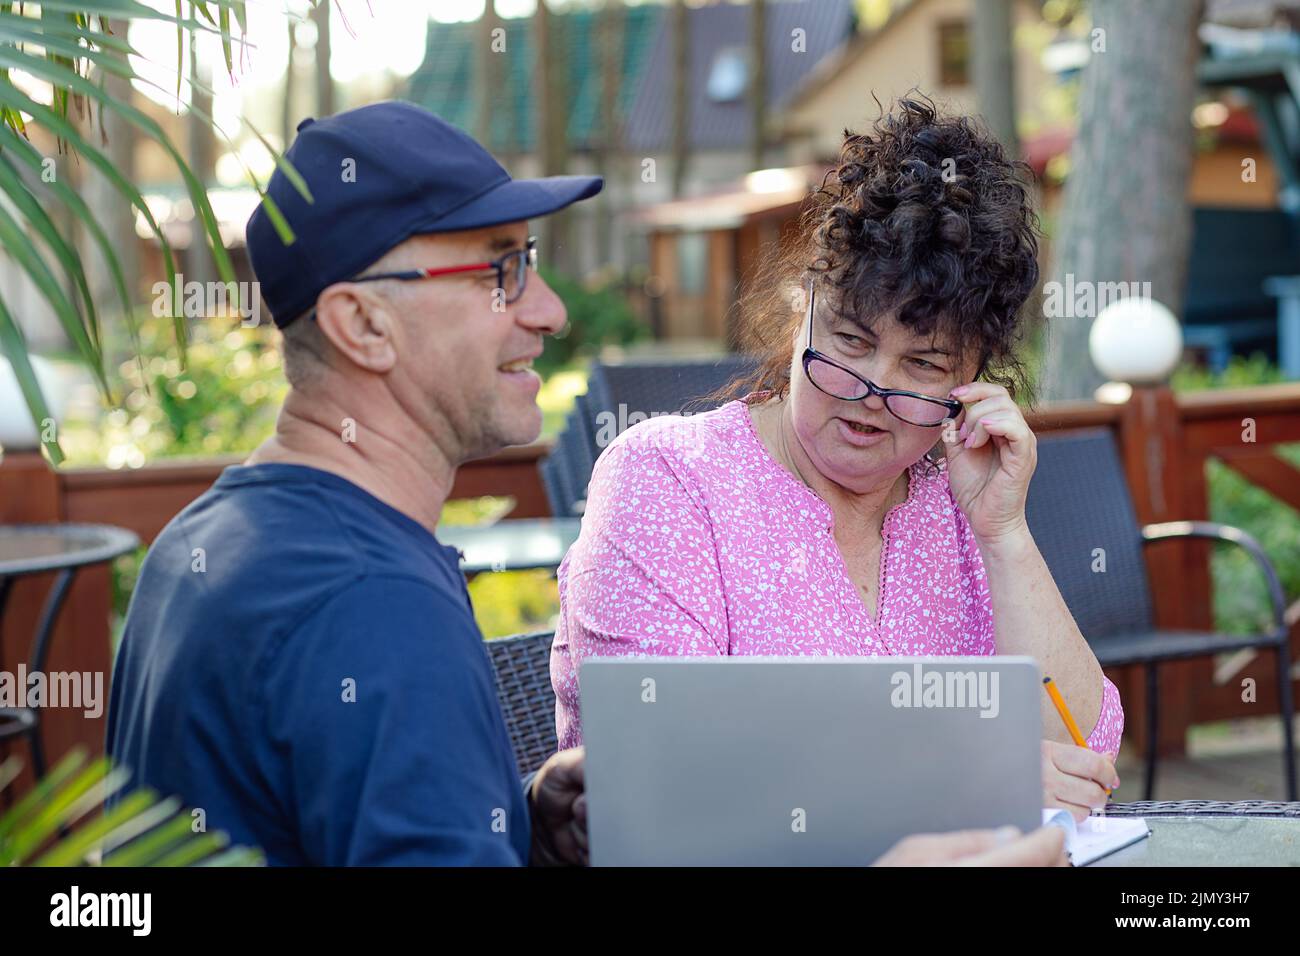 Ritratto di coppia di mezza età. Donna curly che guarda sospetto a uomo sorridente seduto vicino a un computer portatile in un bar all'aperto. Foto Stock